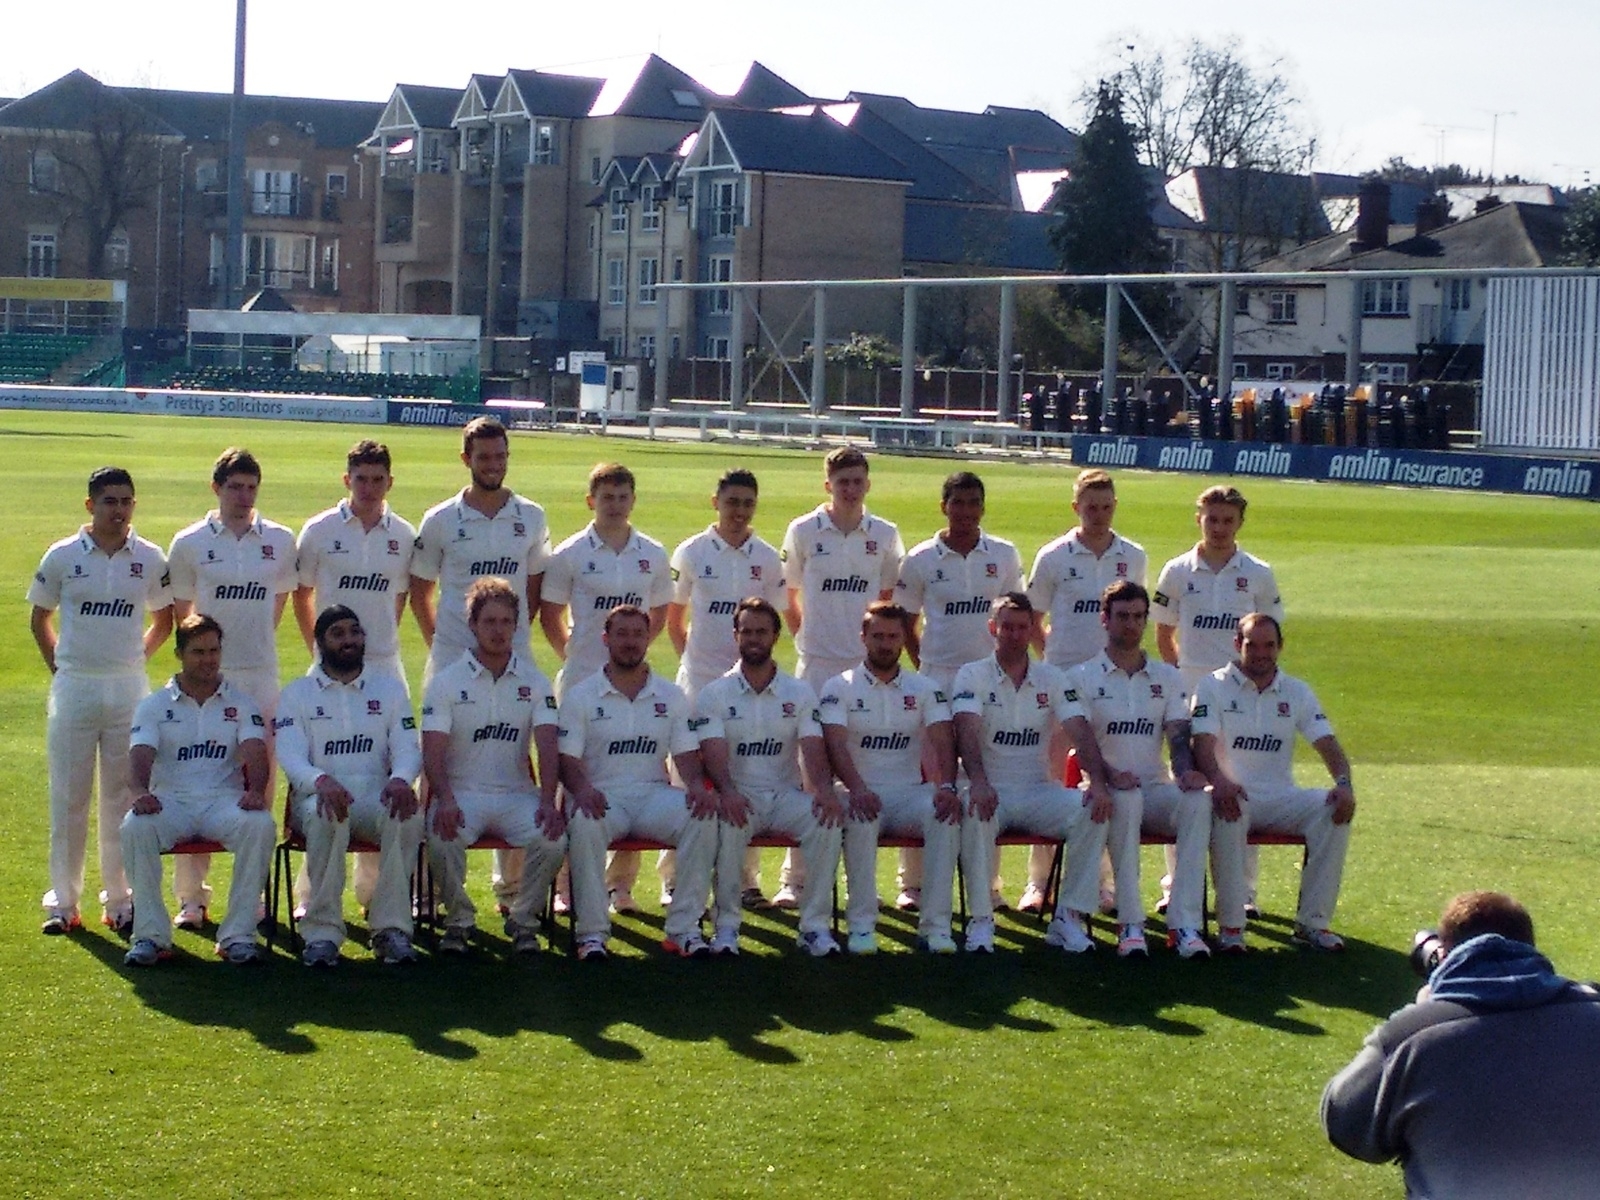 Essex Cricket Team for 1600 x 1200 resolution